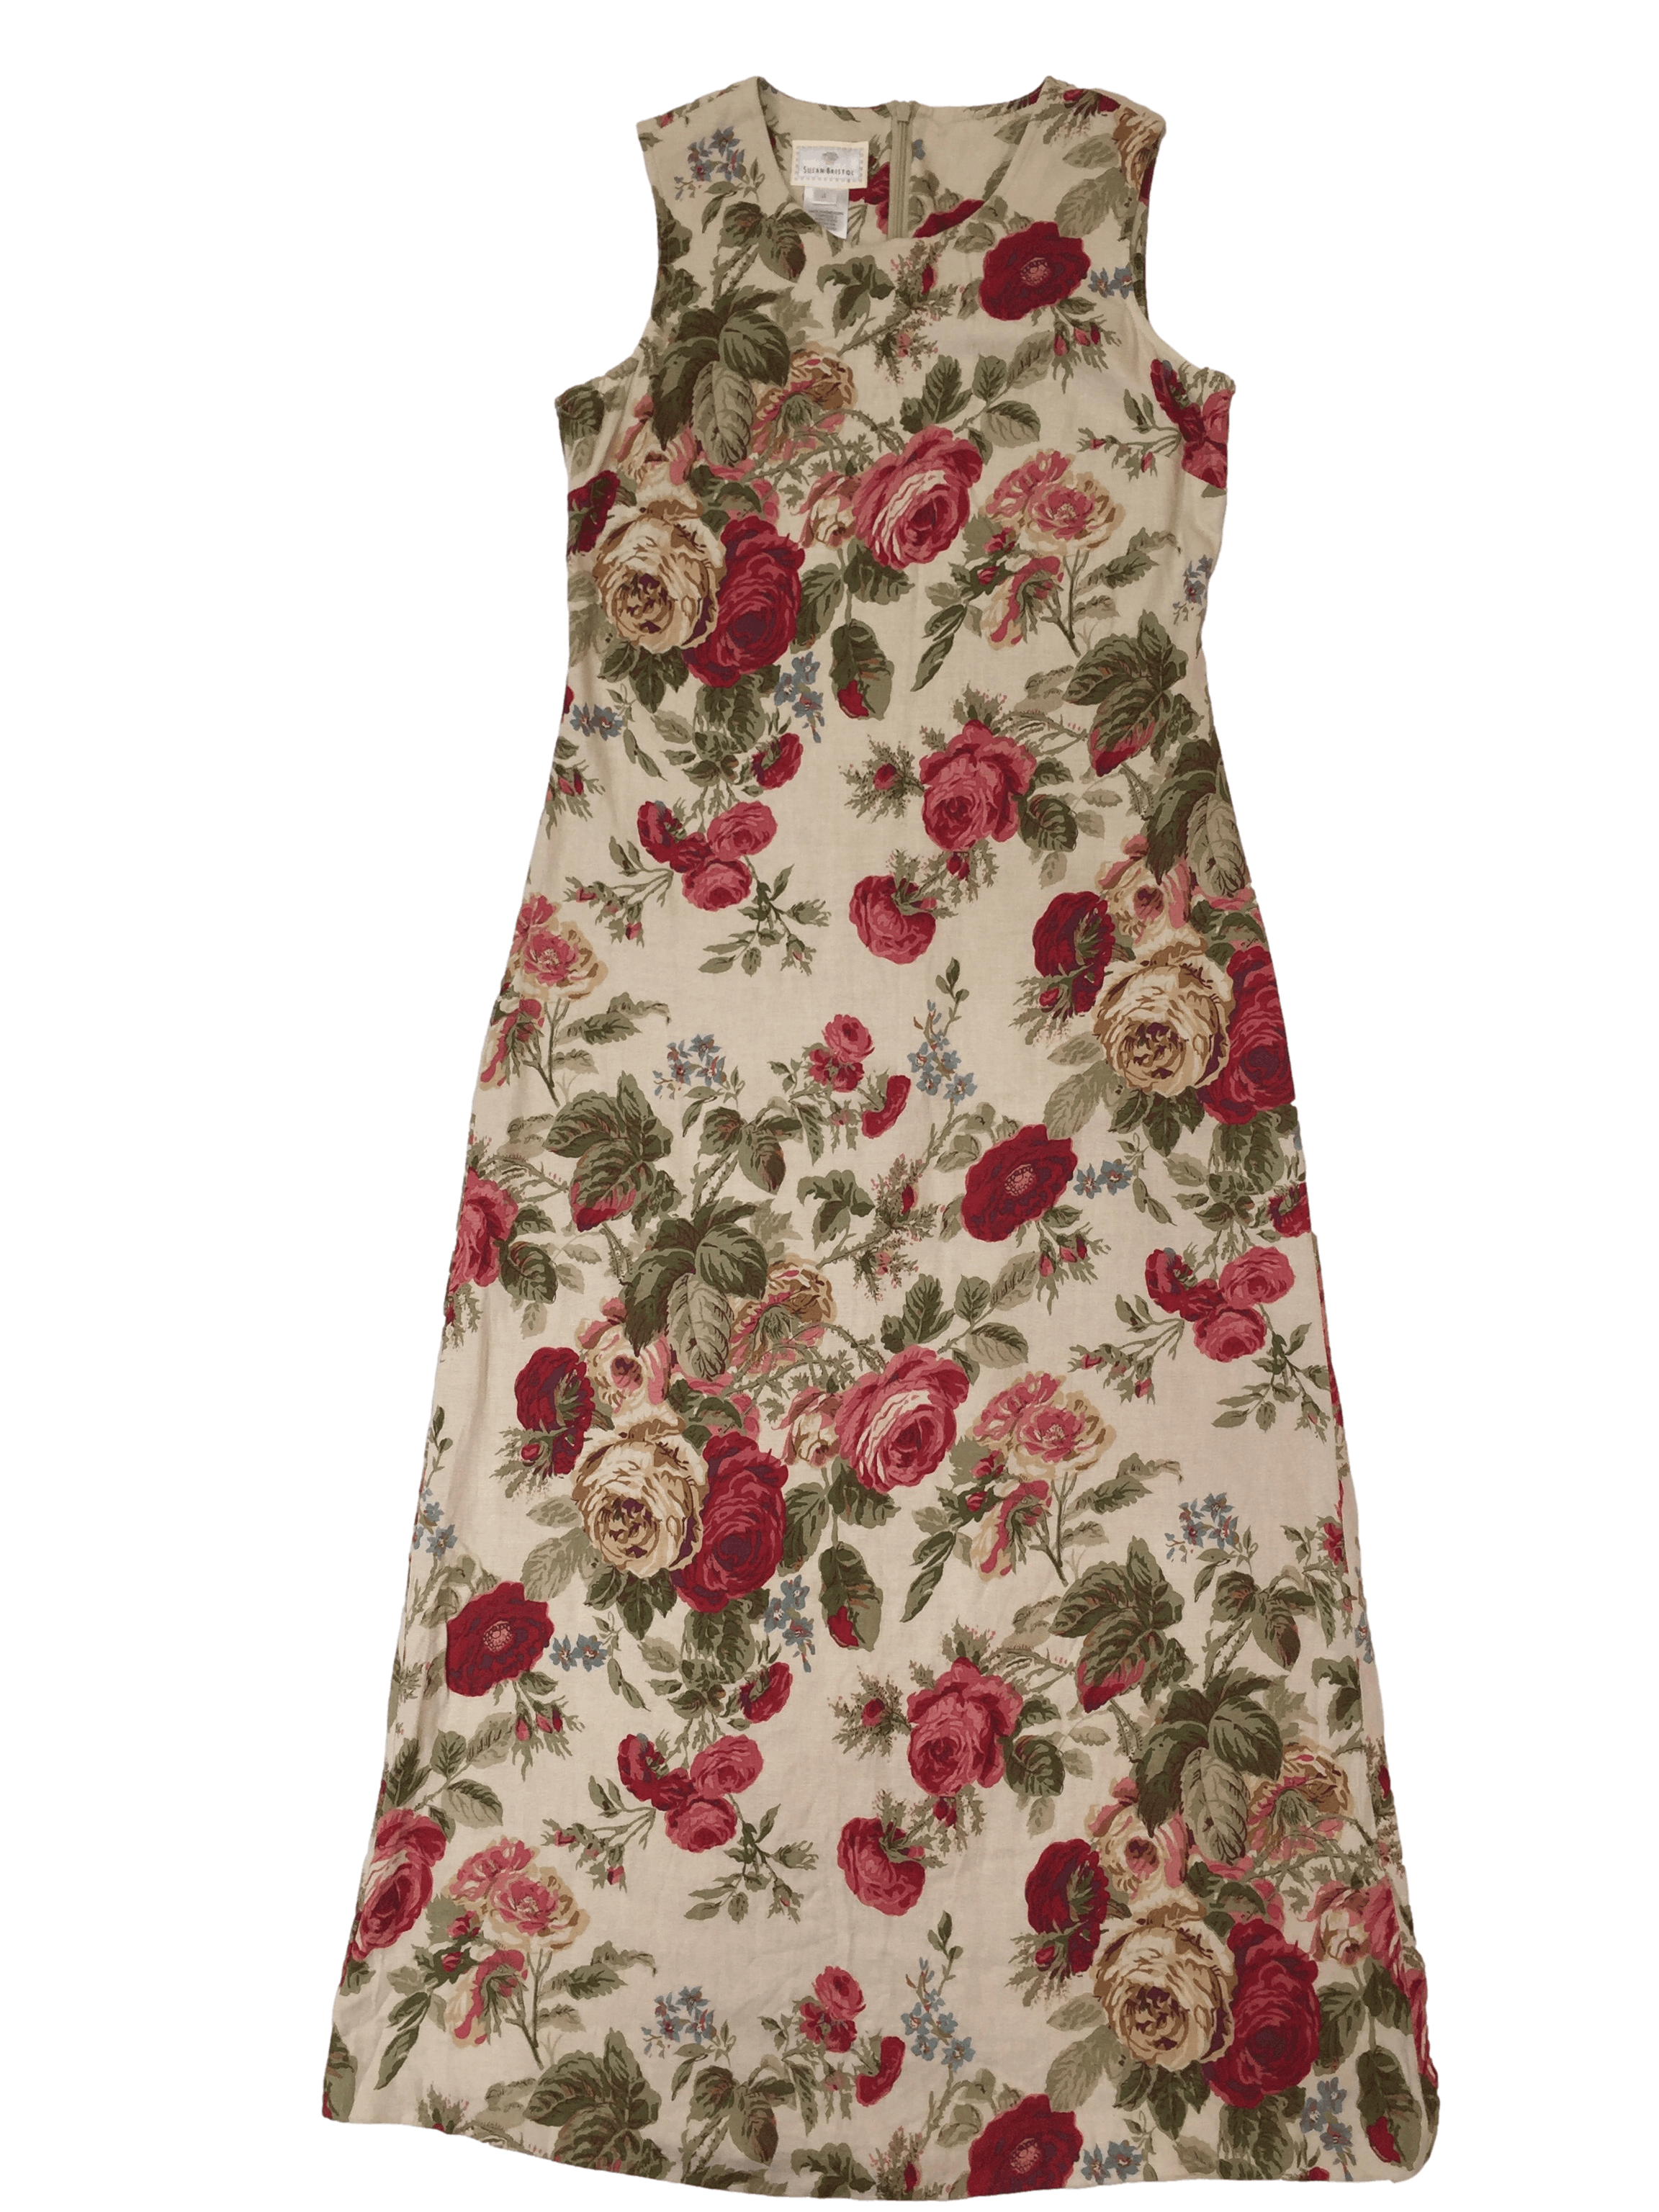 Vestido vintage Susan Bristol color arena con estampado de rosas. Busto 96cm, Largo 130cm. Precio original 150 euros.